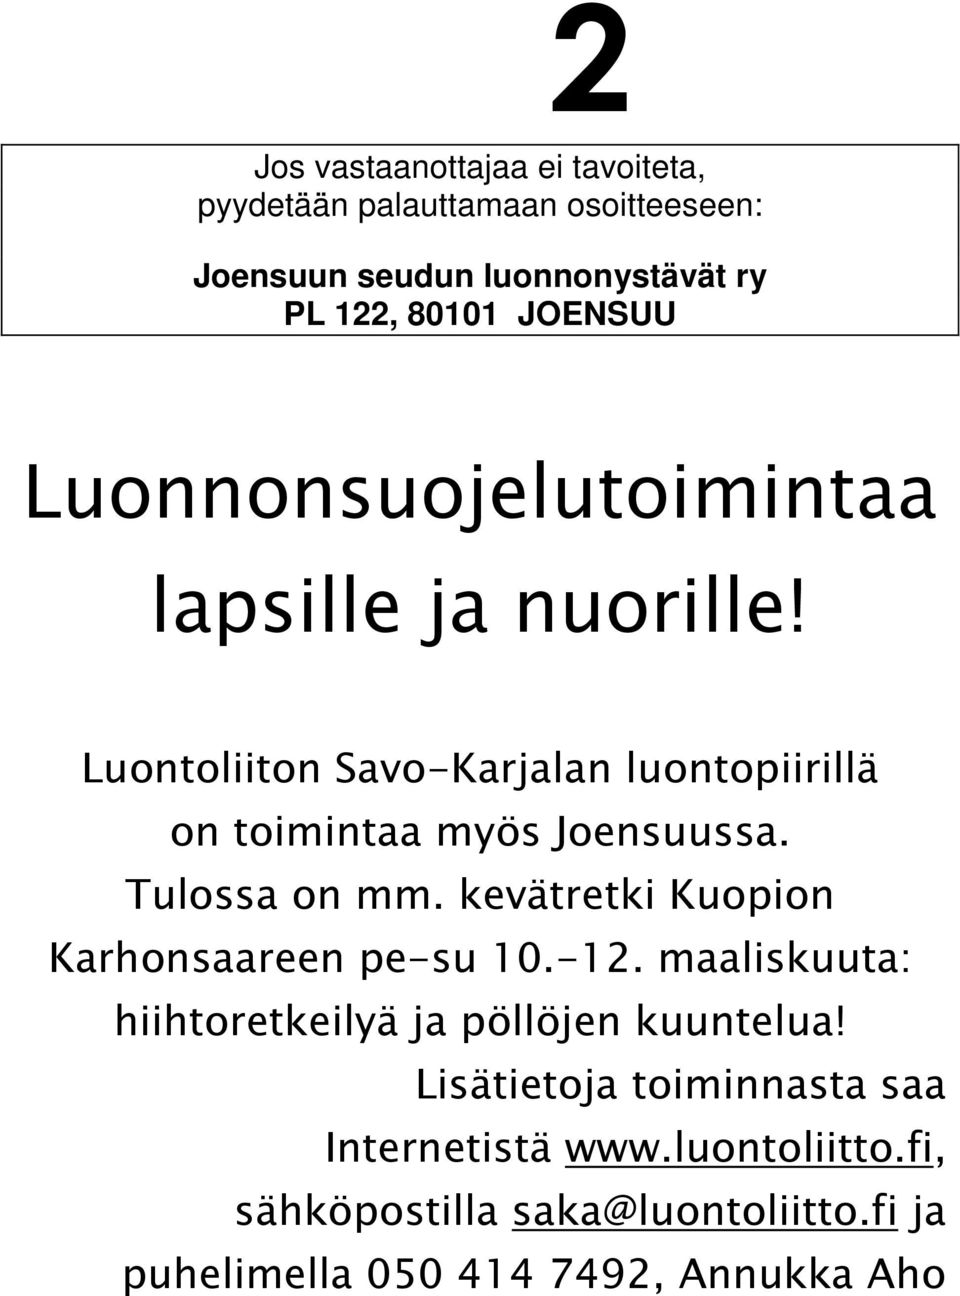 Tulossa on mm. kevätretki Kuopion Karhonsaareen pe-su 10.-12. maaliskuuta: hiihtoretkeilyä ja pöllöjen kuuntelua!